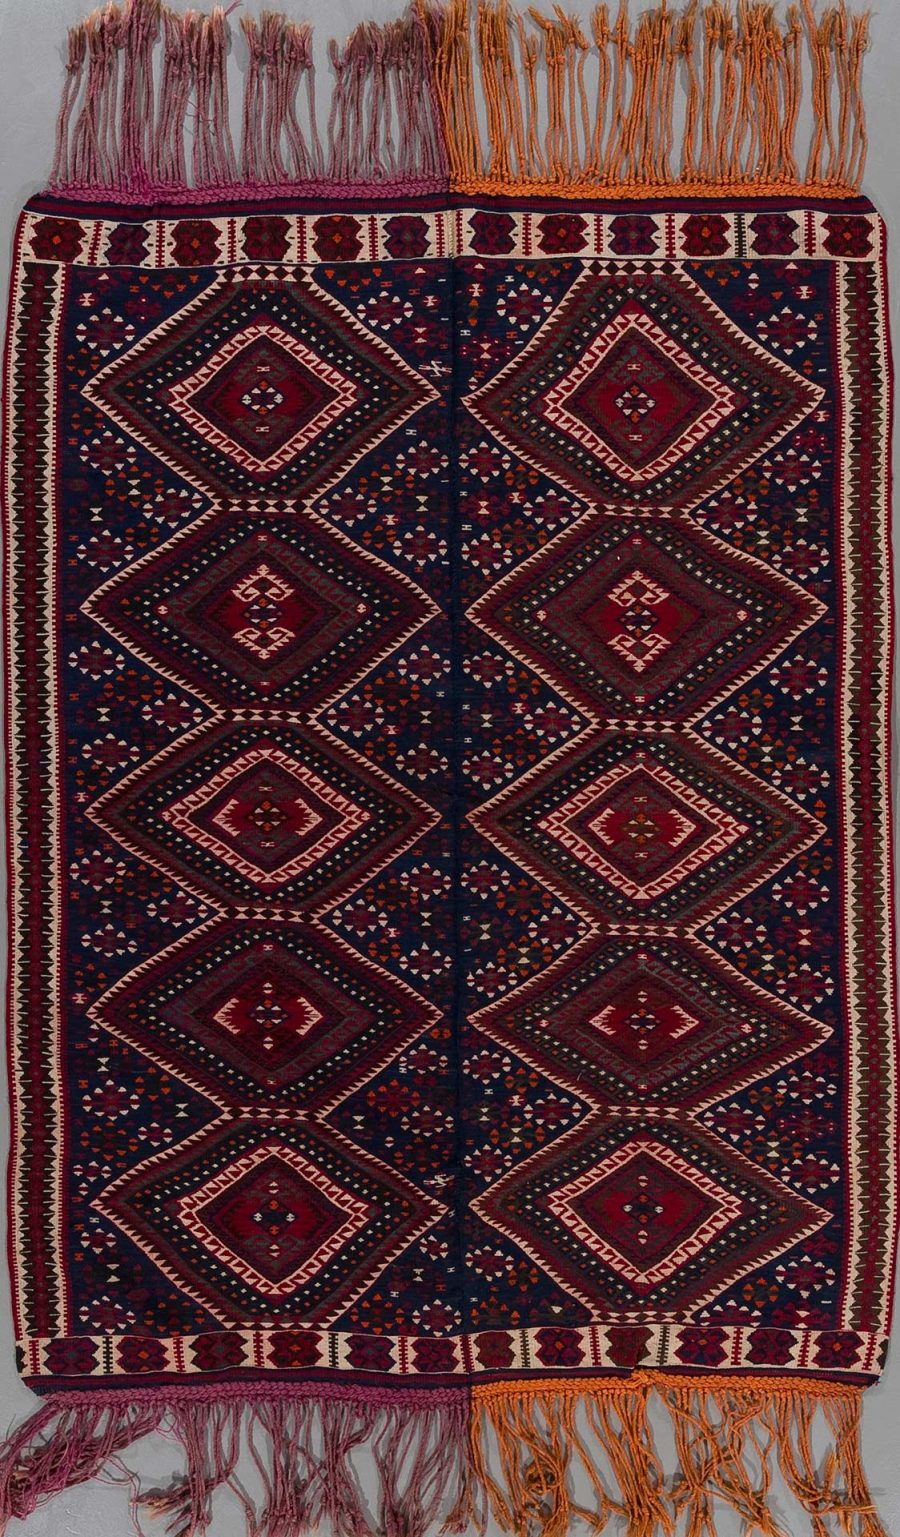 Traditioneller handgeknüpfter Teppich mit symmetrischem Muster in dunkelroten und marineblauen Farbtönen mit weißen und orangefarbenen Akzenten und Fransen an den Enden.